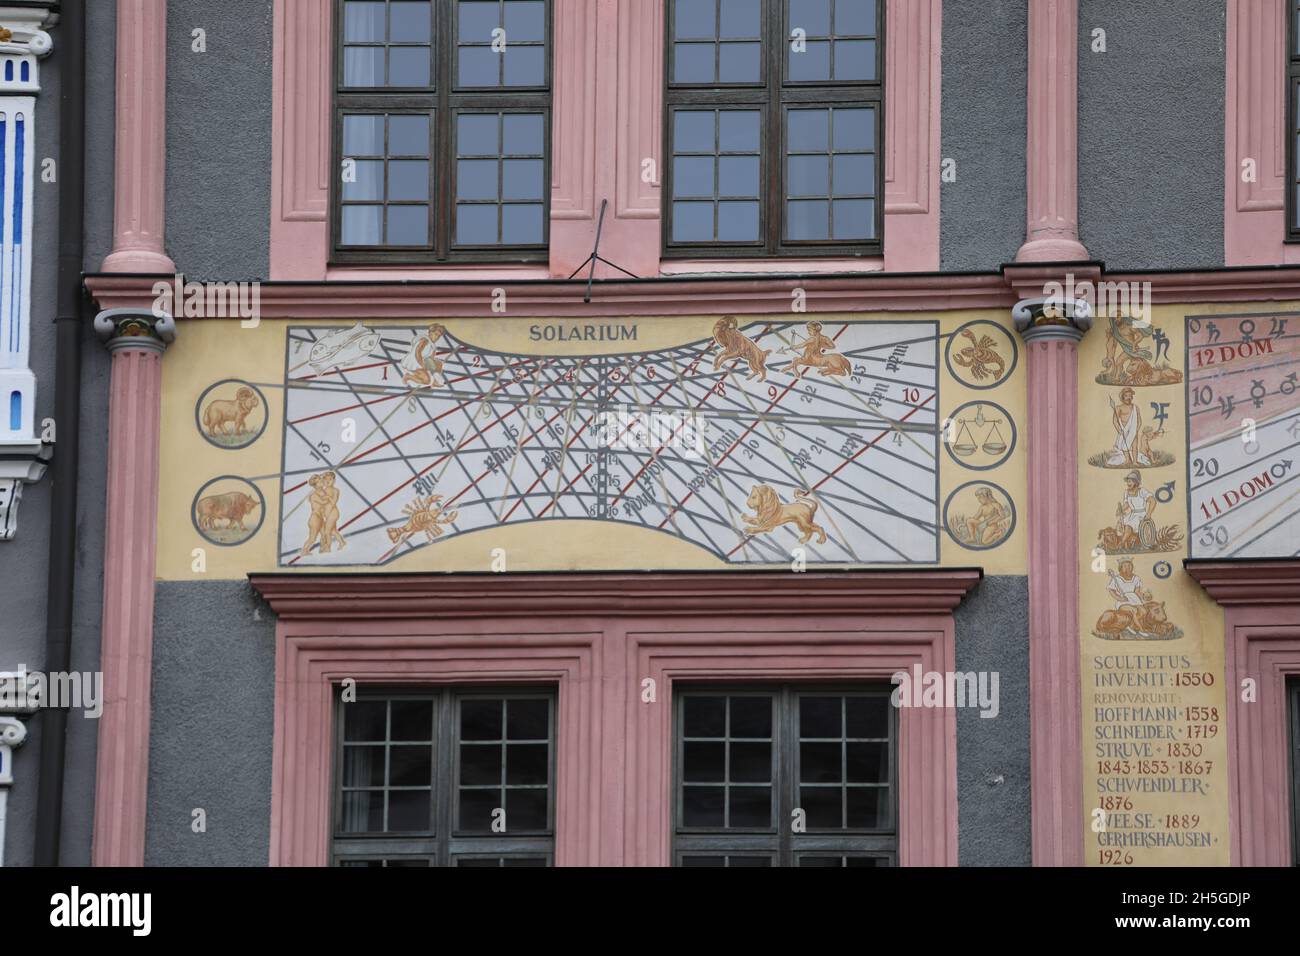 Die Ratsapotheke, auch Struve-Apotheke genannt, zählt zu den bekanntesten Bürgerhäusern in der historischen Görlitzer Altstadt. Der Renaissancebau bef Stock Photo